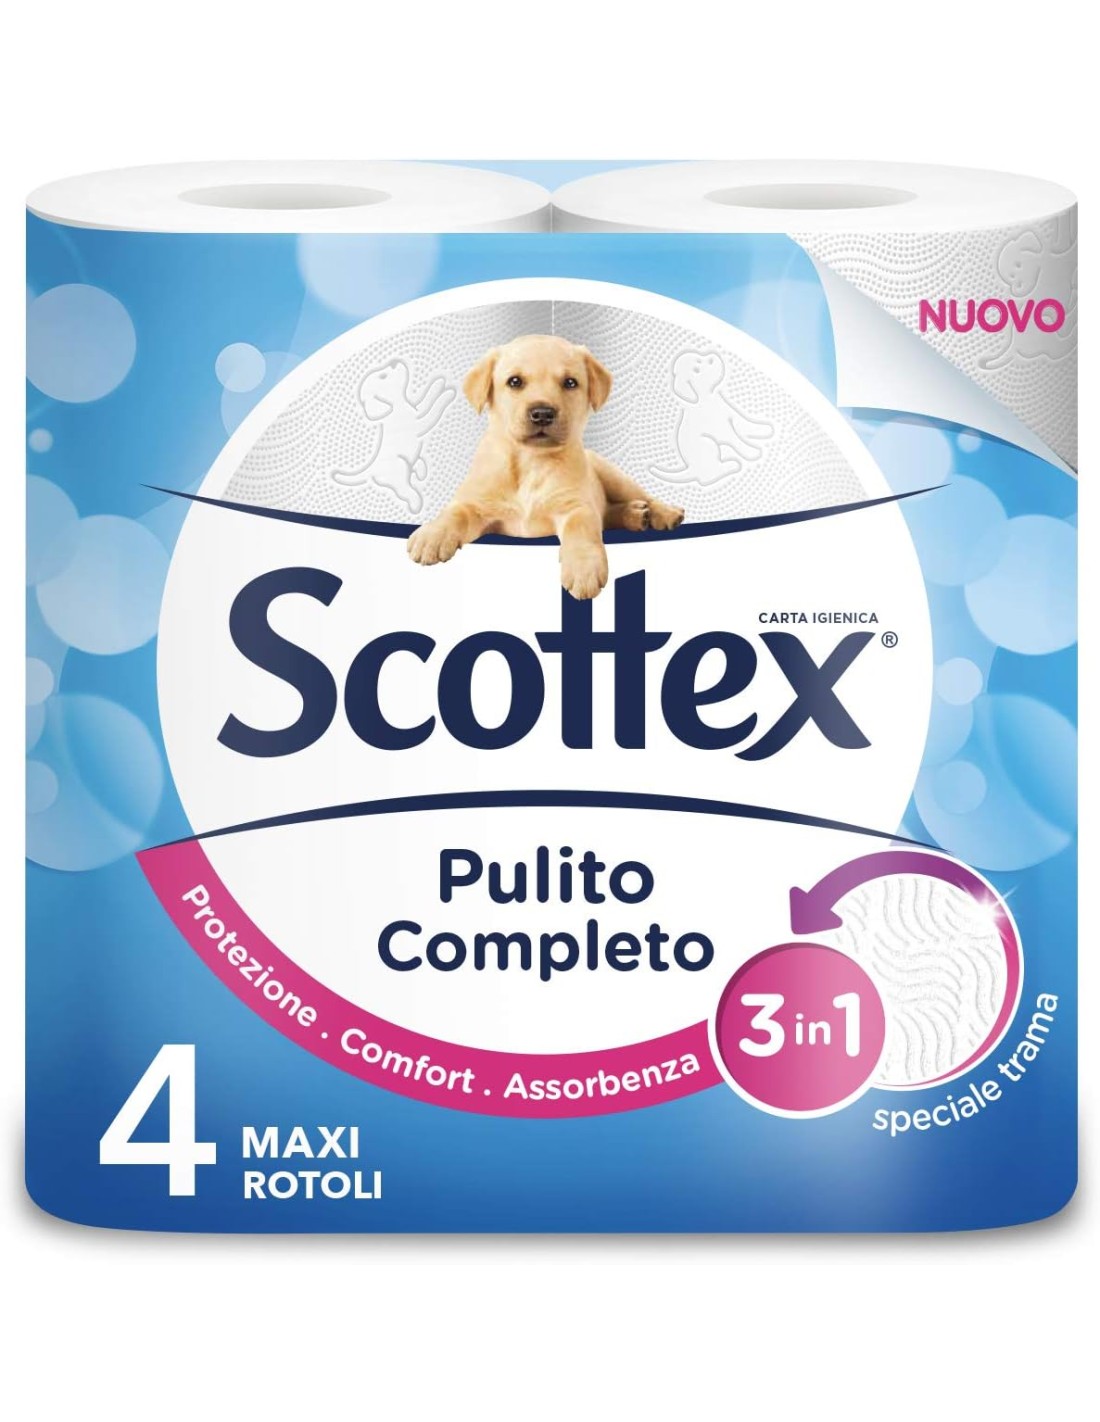 Scottex Carta Igienica Maxi Pulito Completo 4 Rotoli - Confort